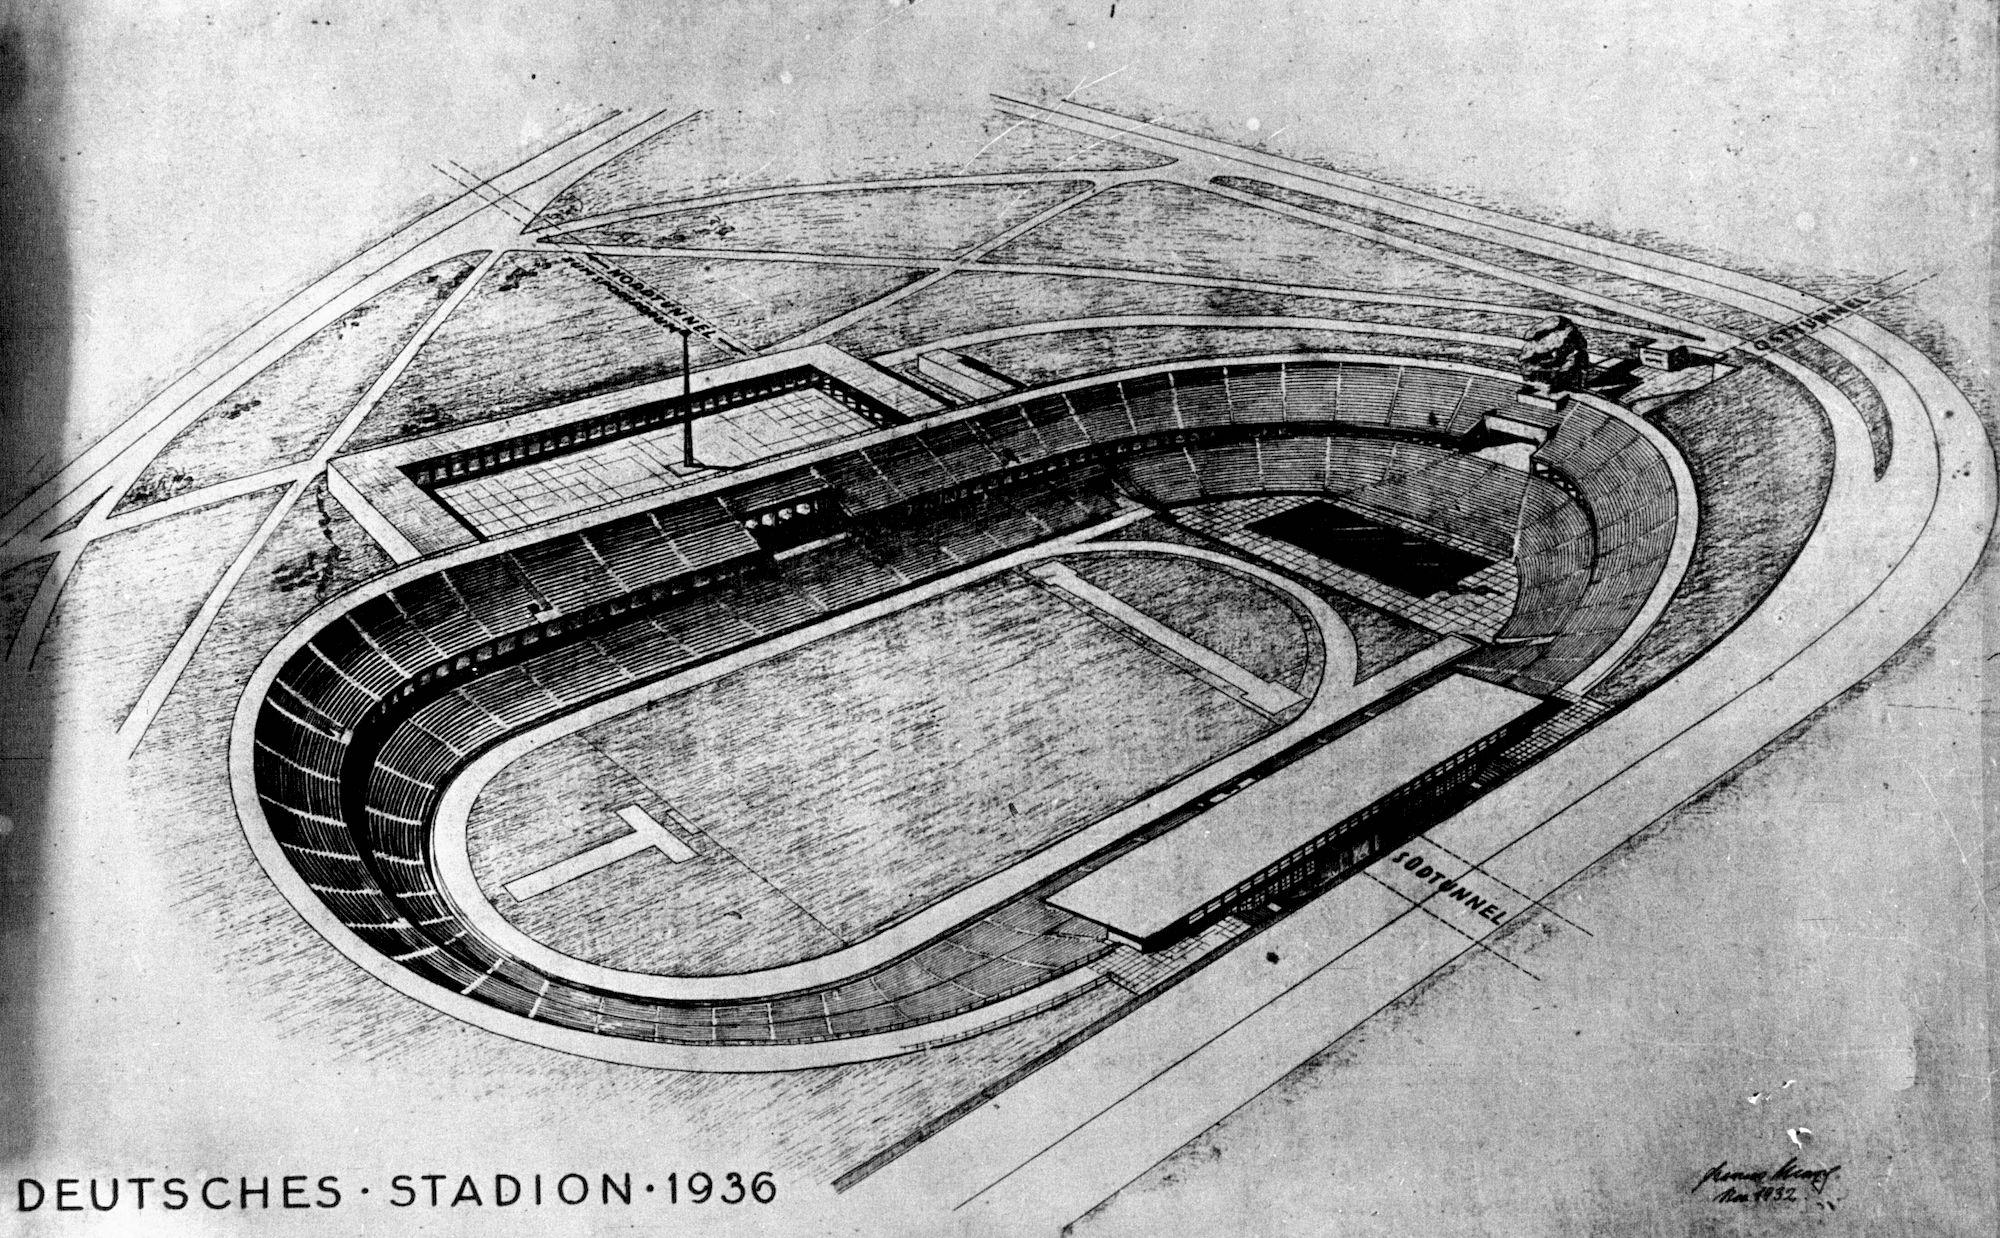 Vue en plan du nouveau stade de Berlin pour les Jeux olympiques, 1932 - source Gallica-BnF